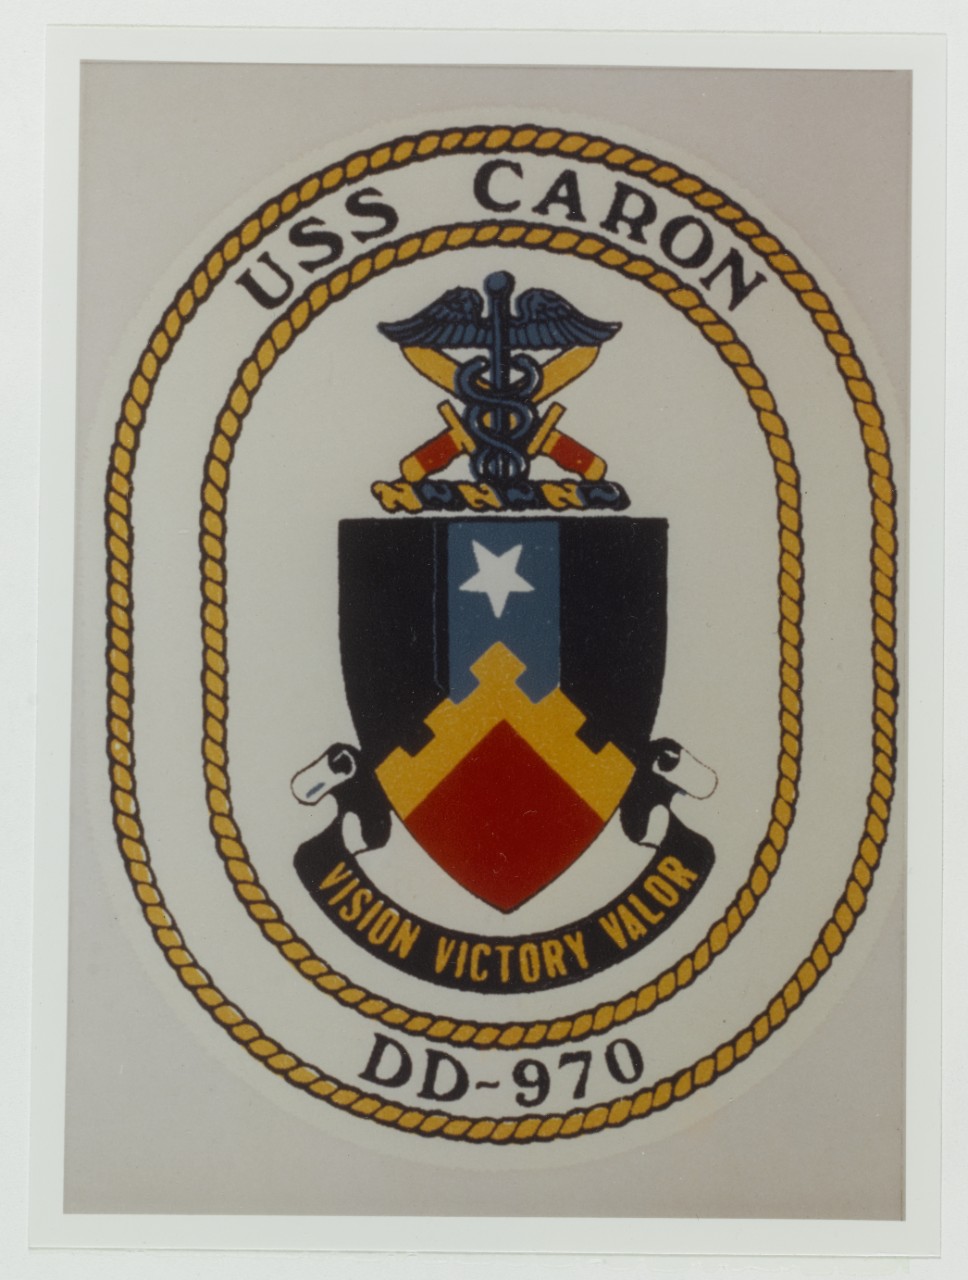 Insignia:  USS CARON (DD-970)